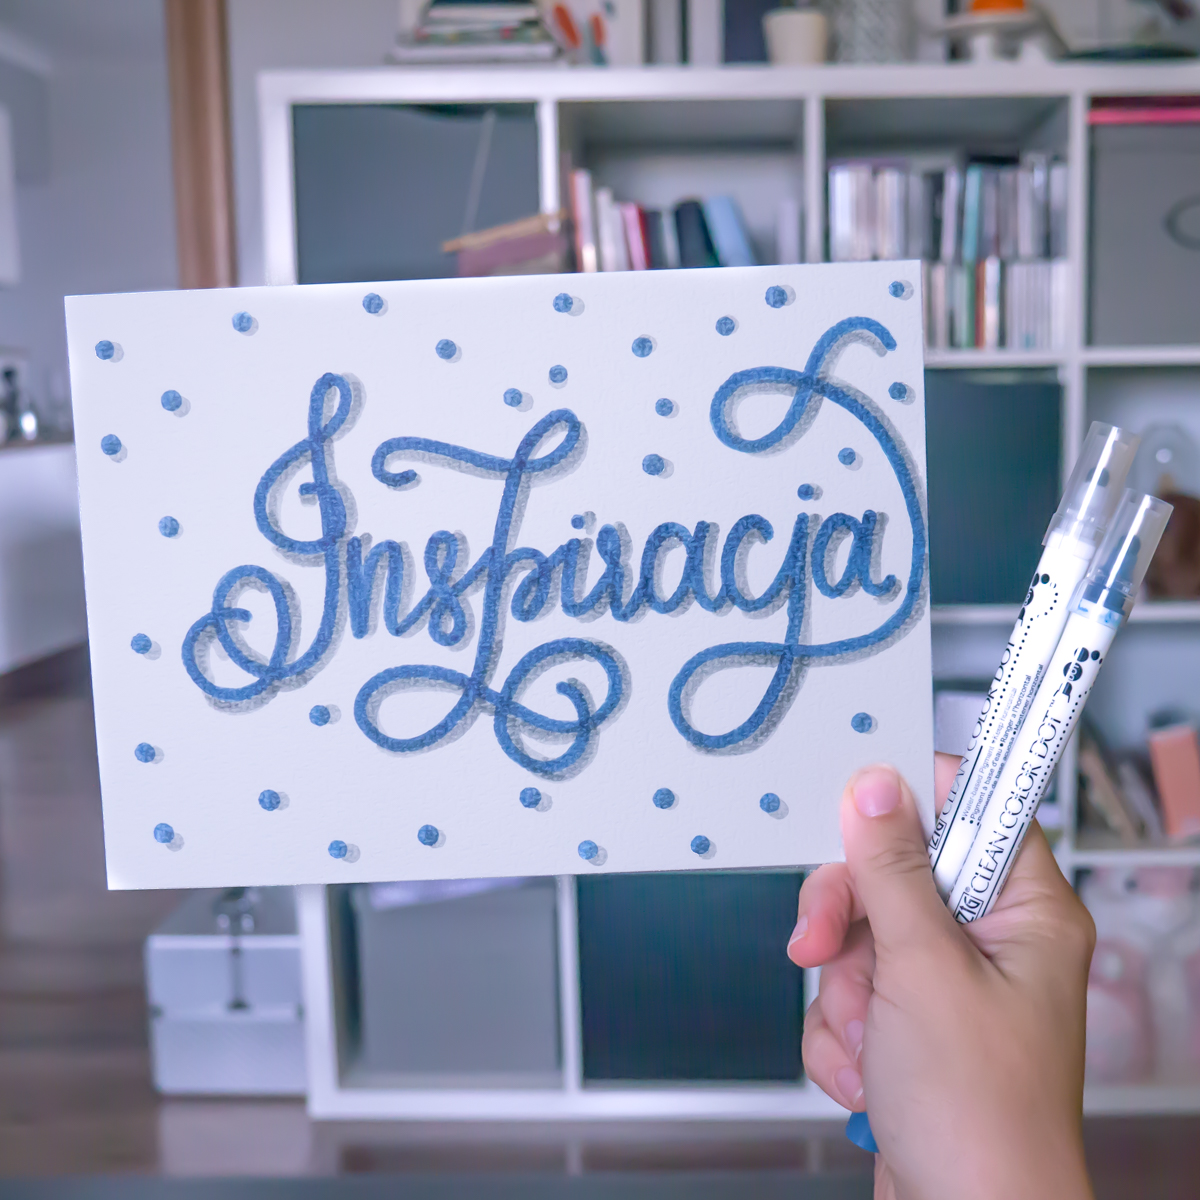 10 pomysłów na wykorzystanie brush letteringu